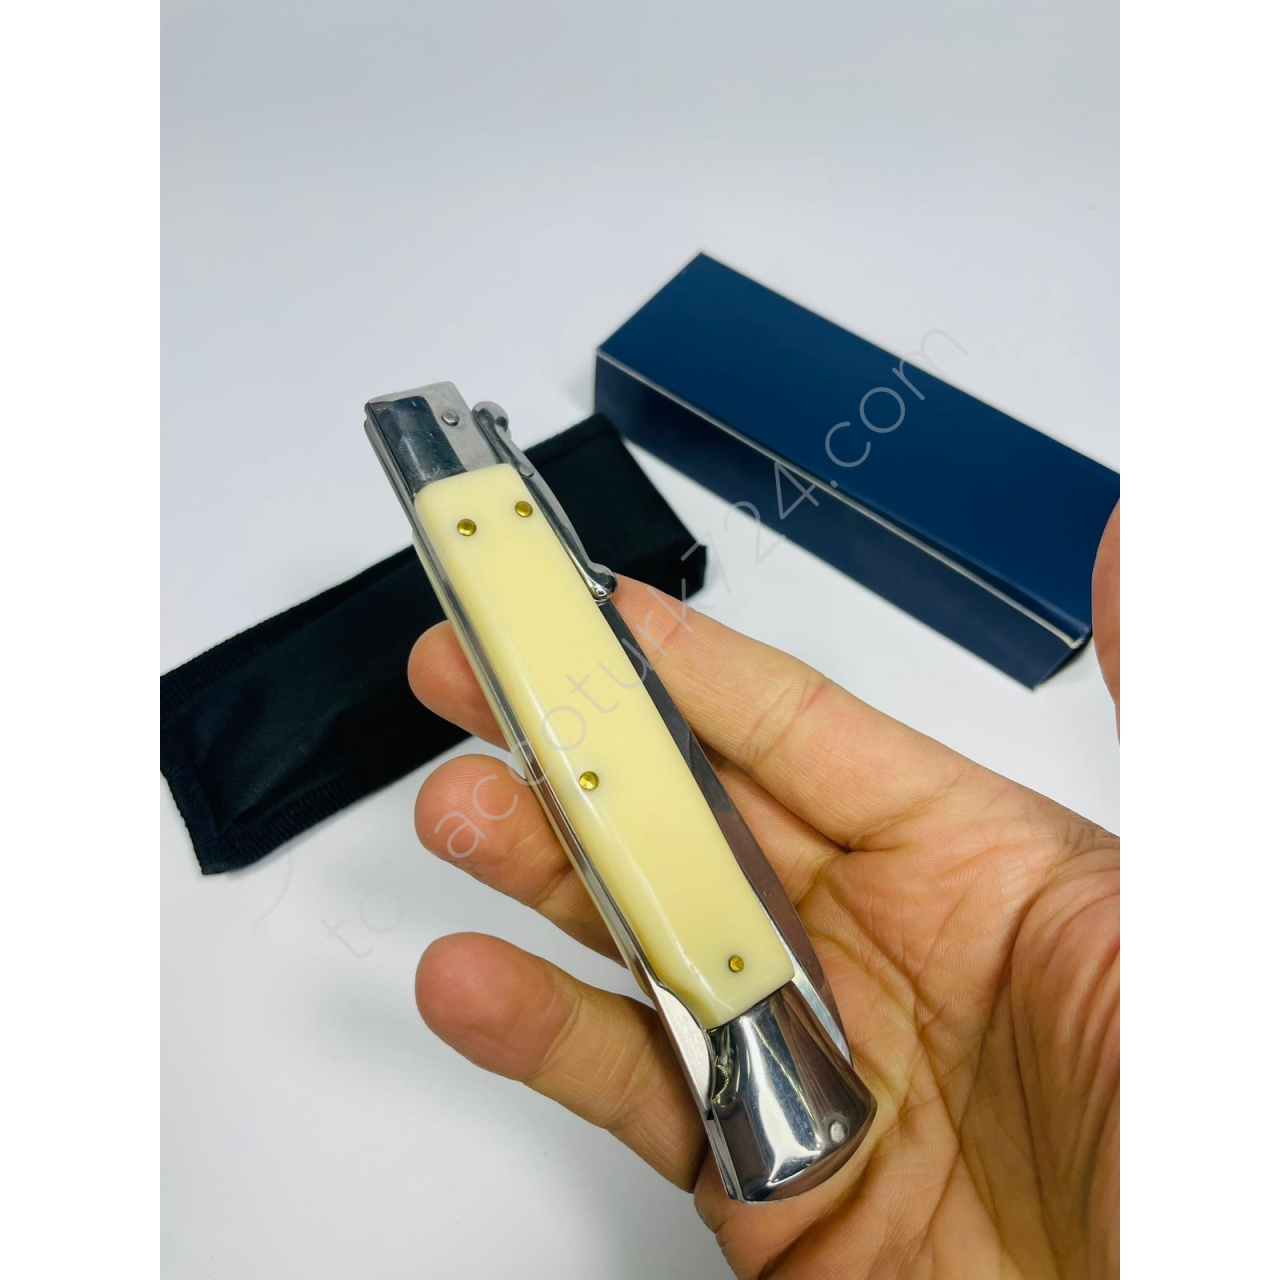 Akc Marka İtalyan Kemik Kasa MetalRenk Bıçak //25cm-Yeniseri